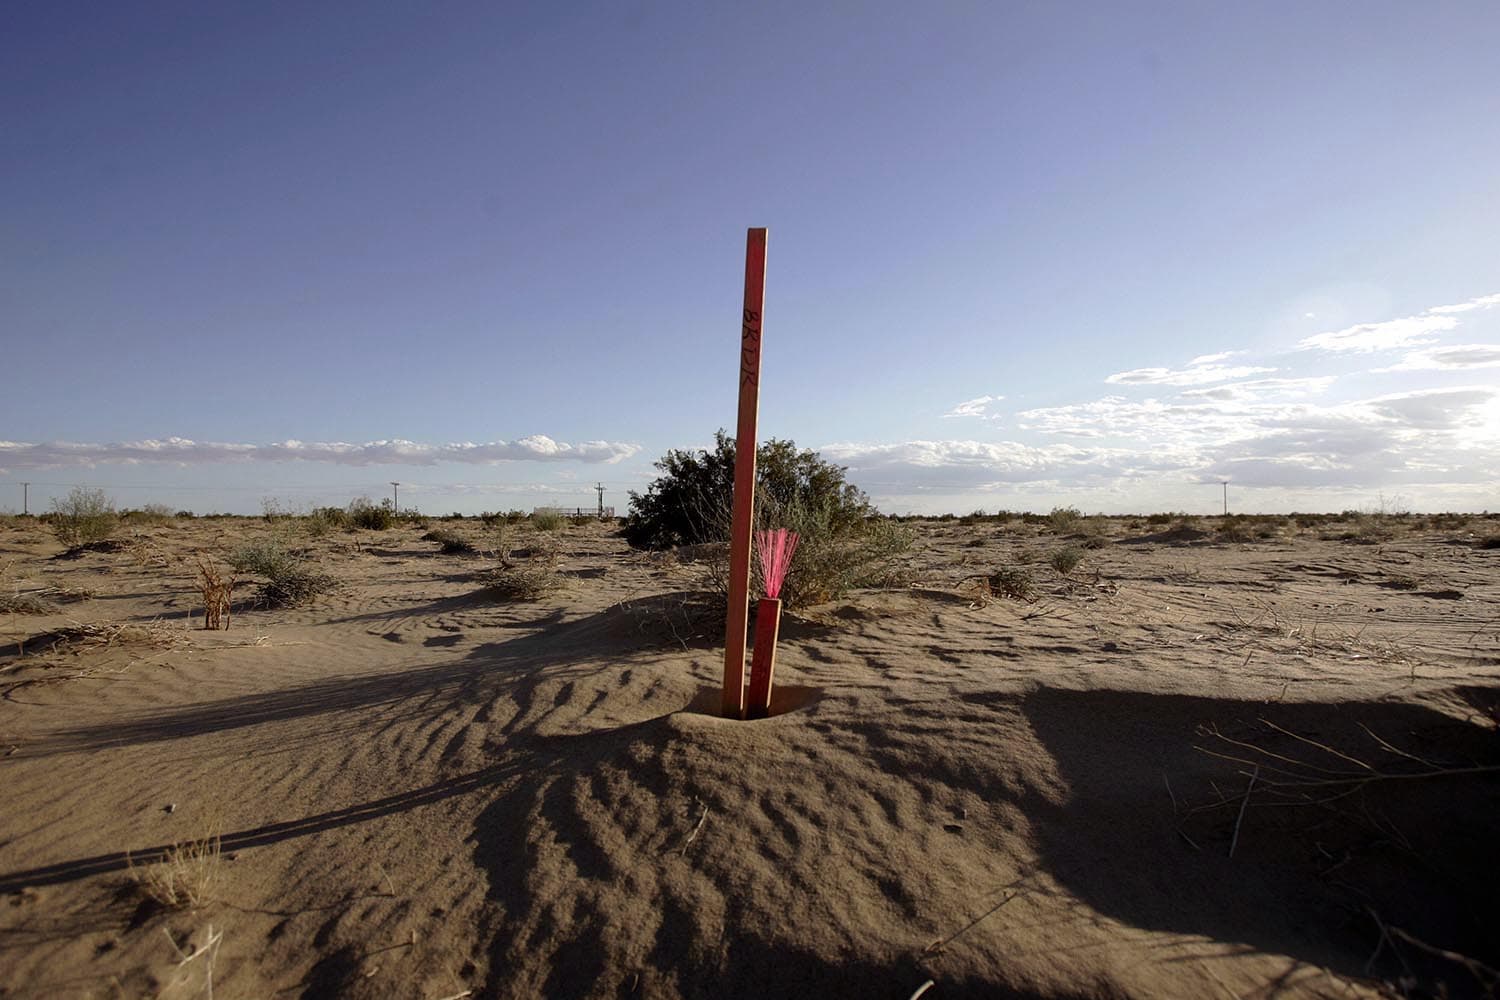 Especial Lugares muy calientes. Un palo de madera marca la frontera entre EE UU y México